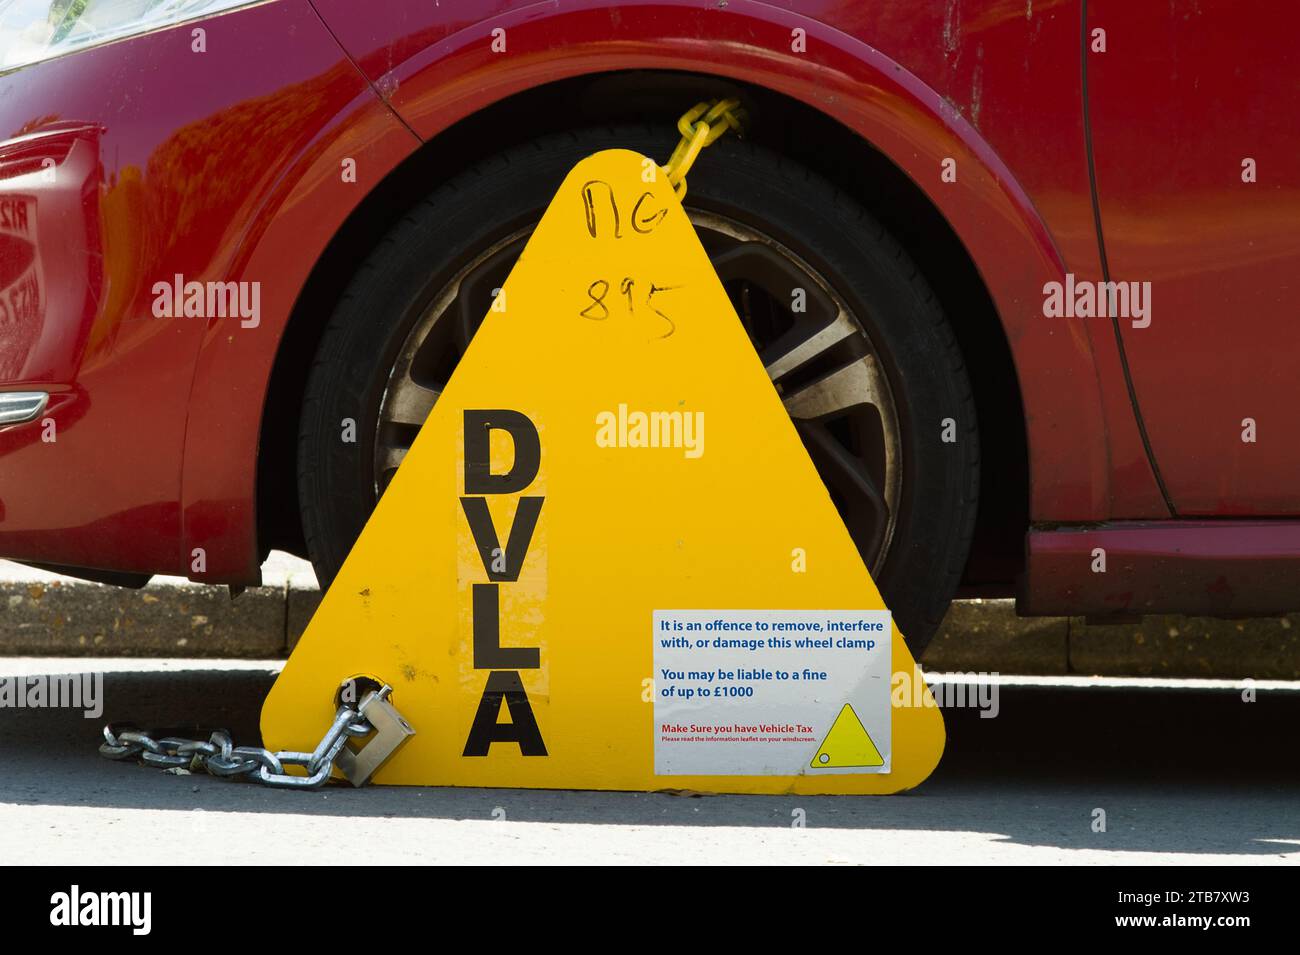 Pince de roue triangulaire DVLA attachée à Une voiture automobile avec avertissement de ne pas enlever, Angleterre Royaume-Uni Banque D'Images